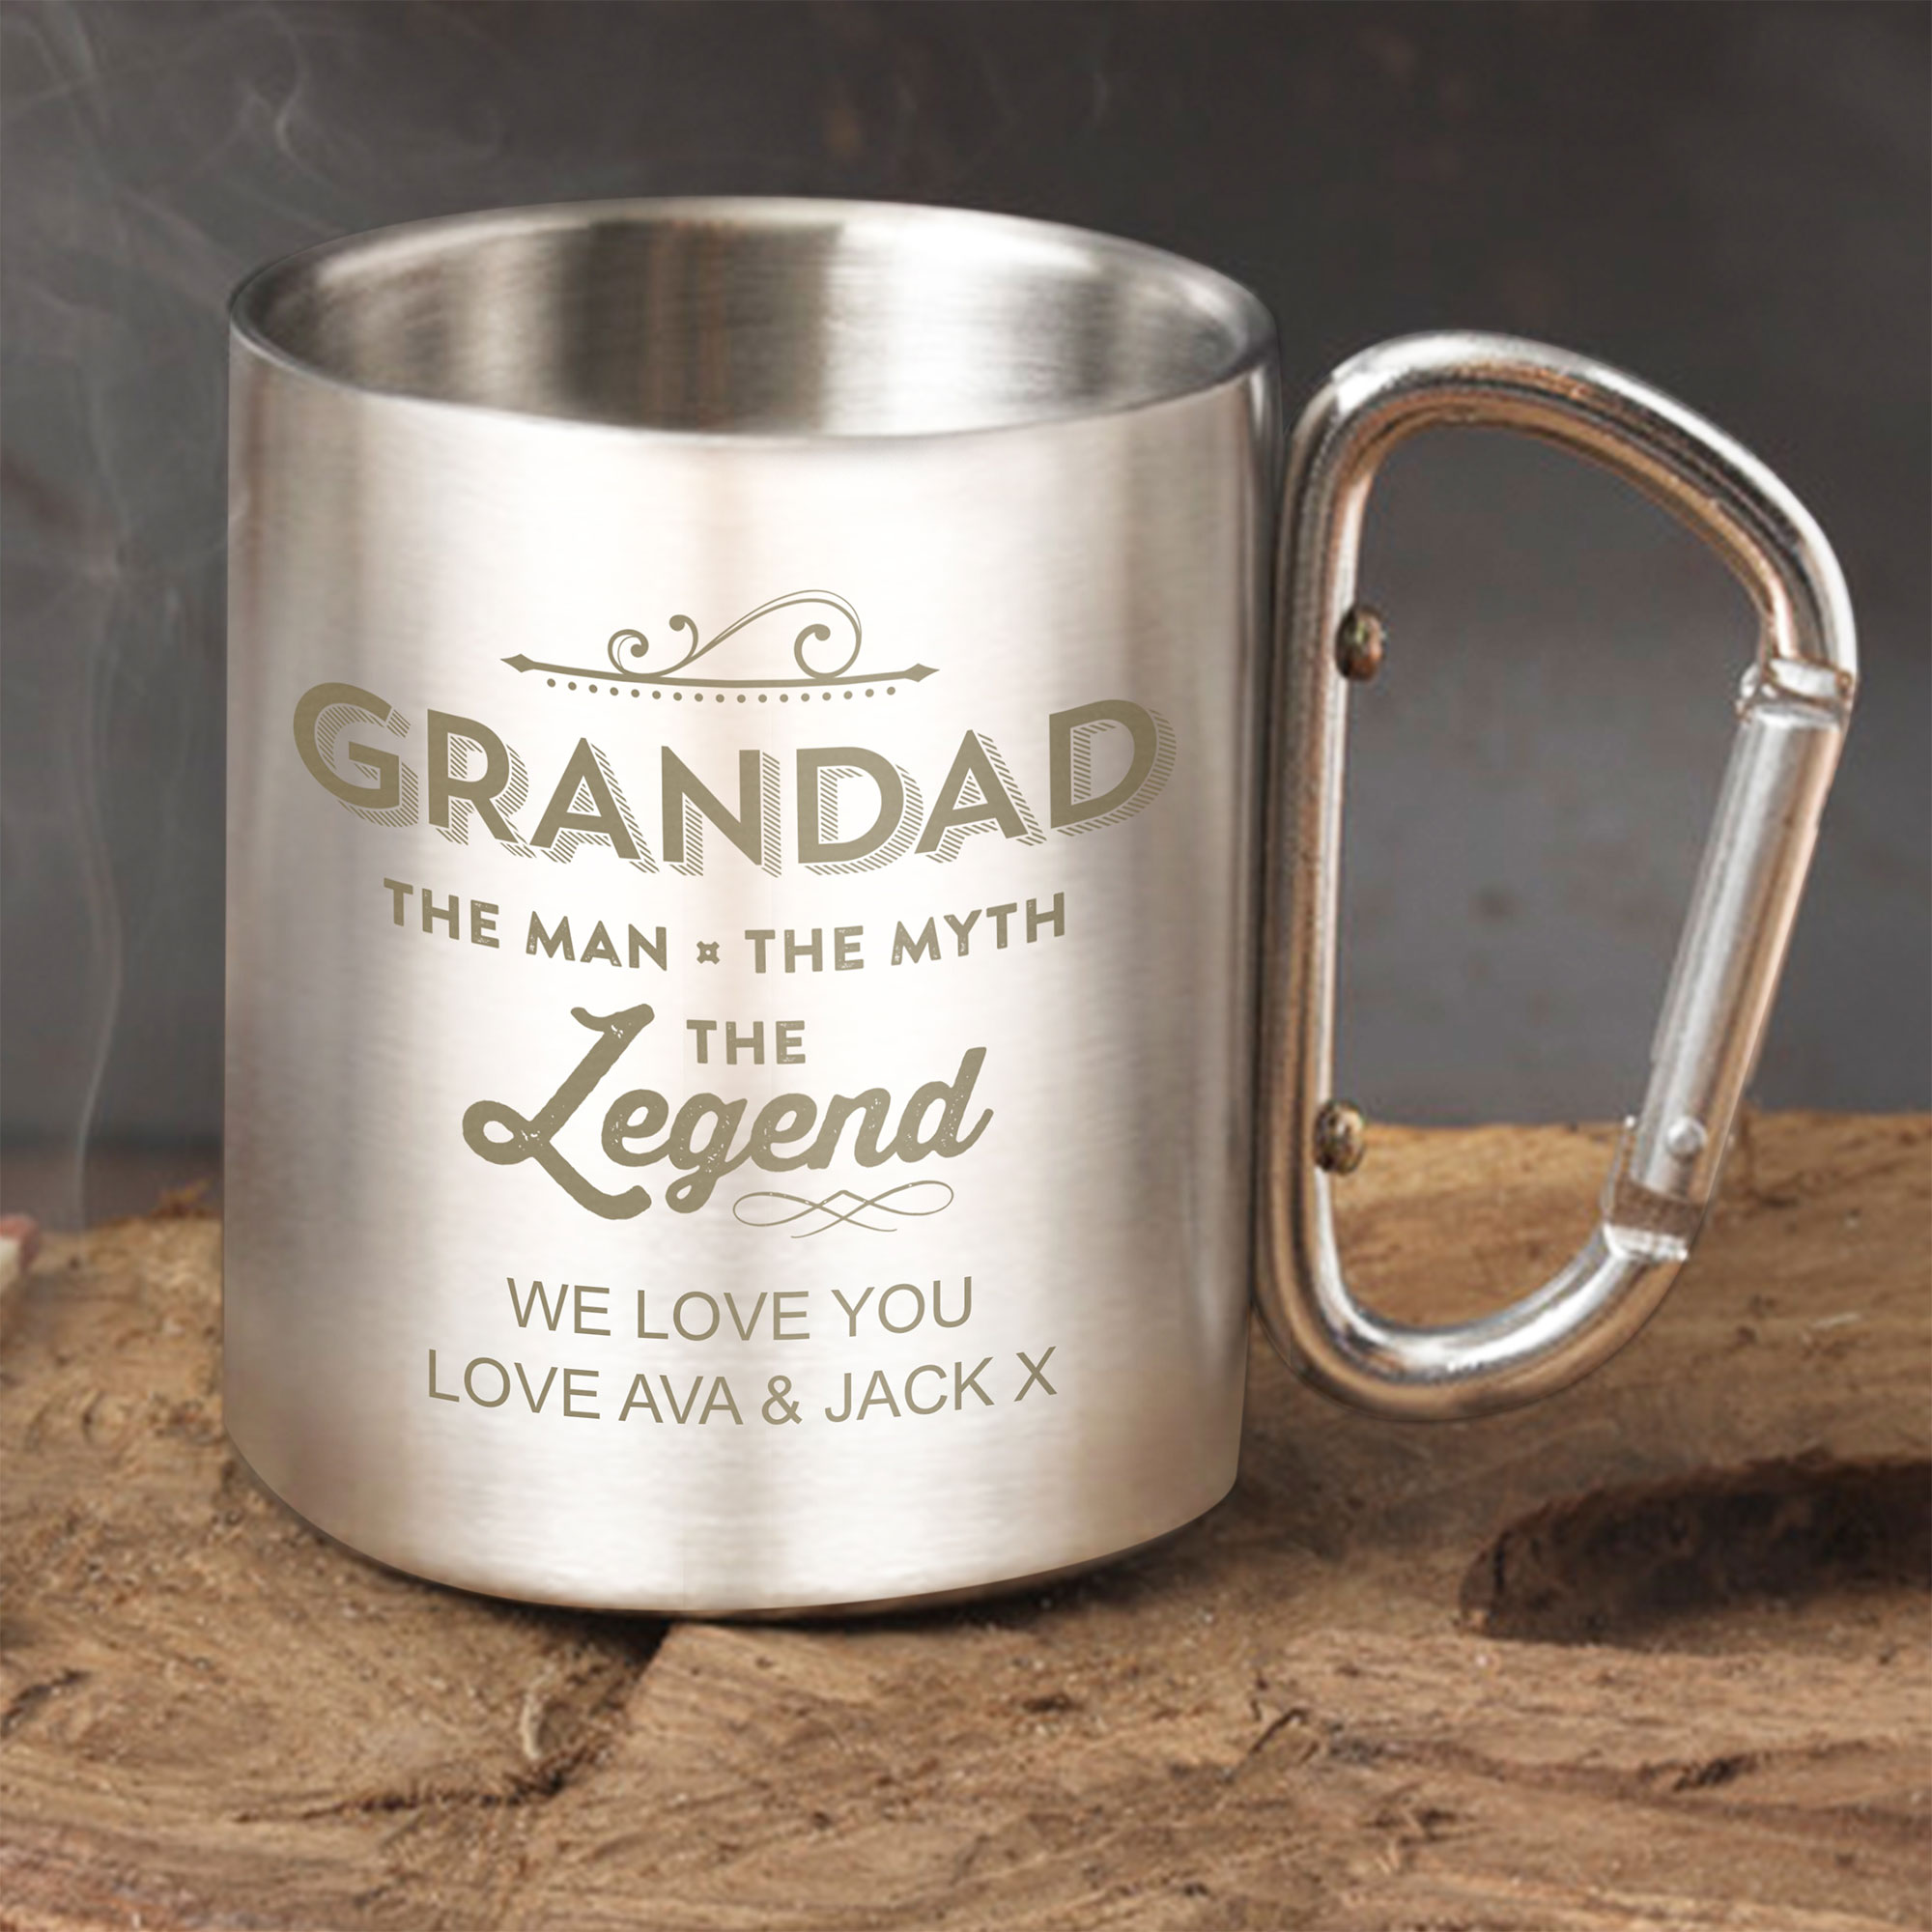 Personalised Steel Mug - Grandad The Legend